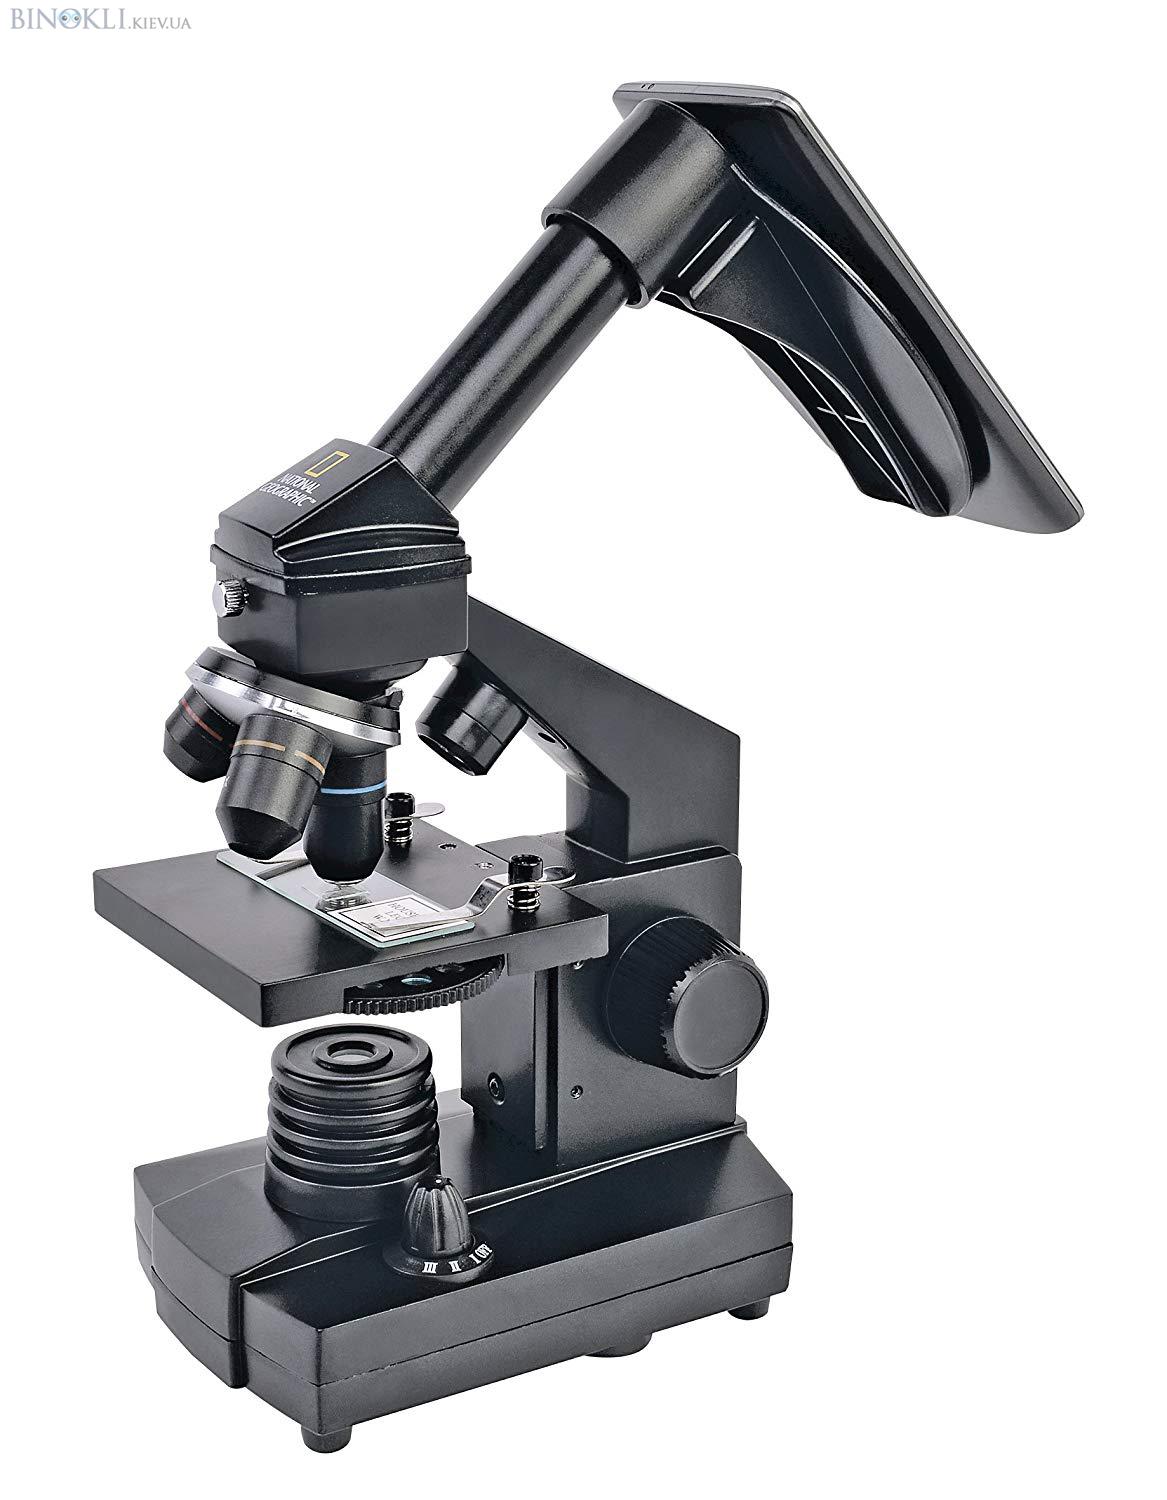 Биологический микроскоп National Geographic 40x-1280x (C адаптером для смартфона)  